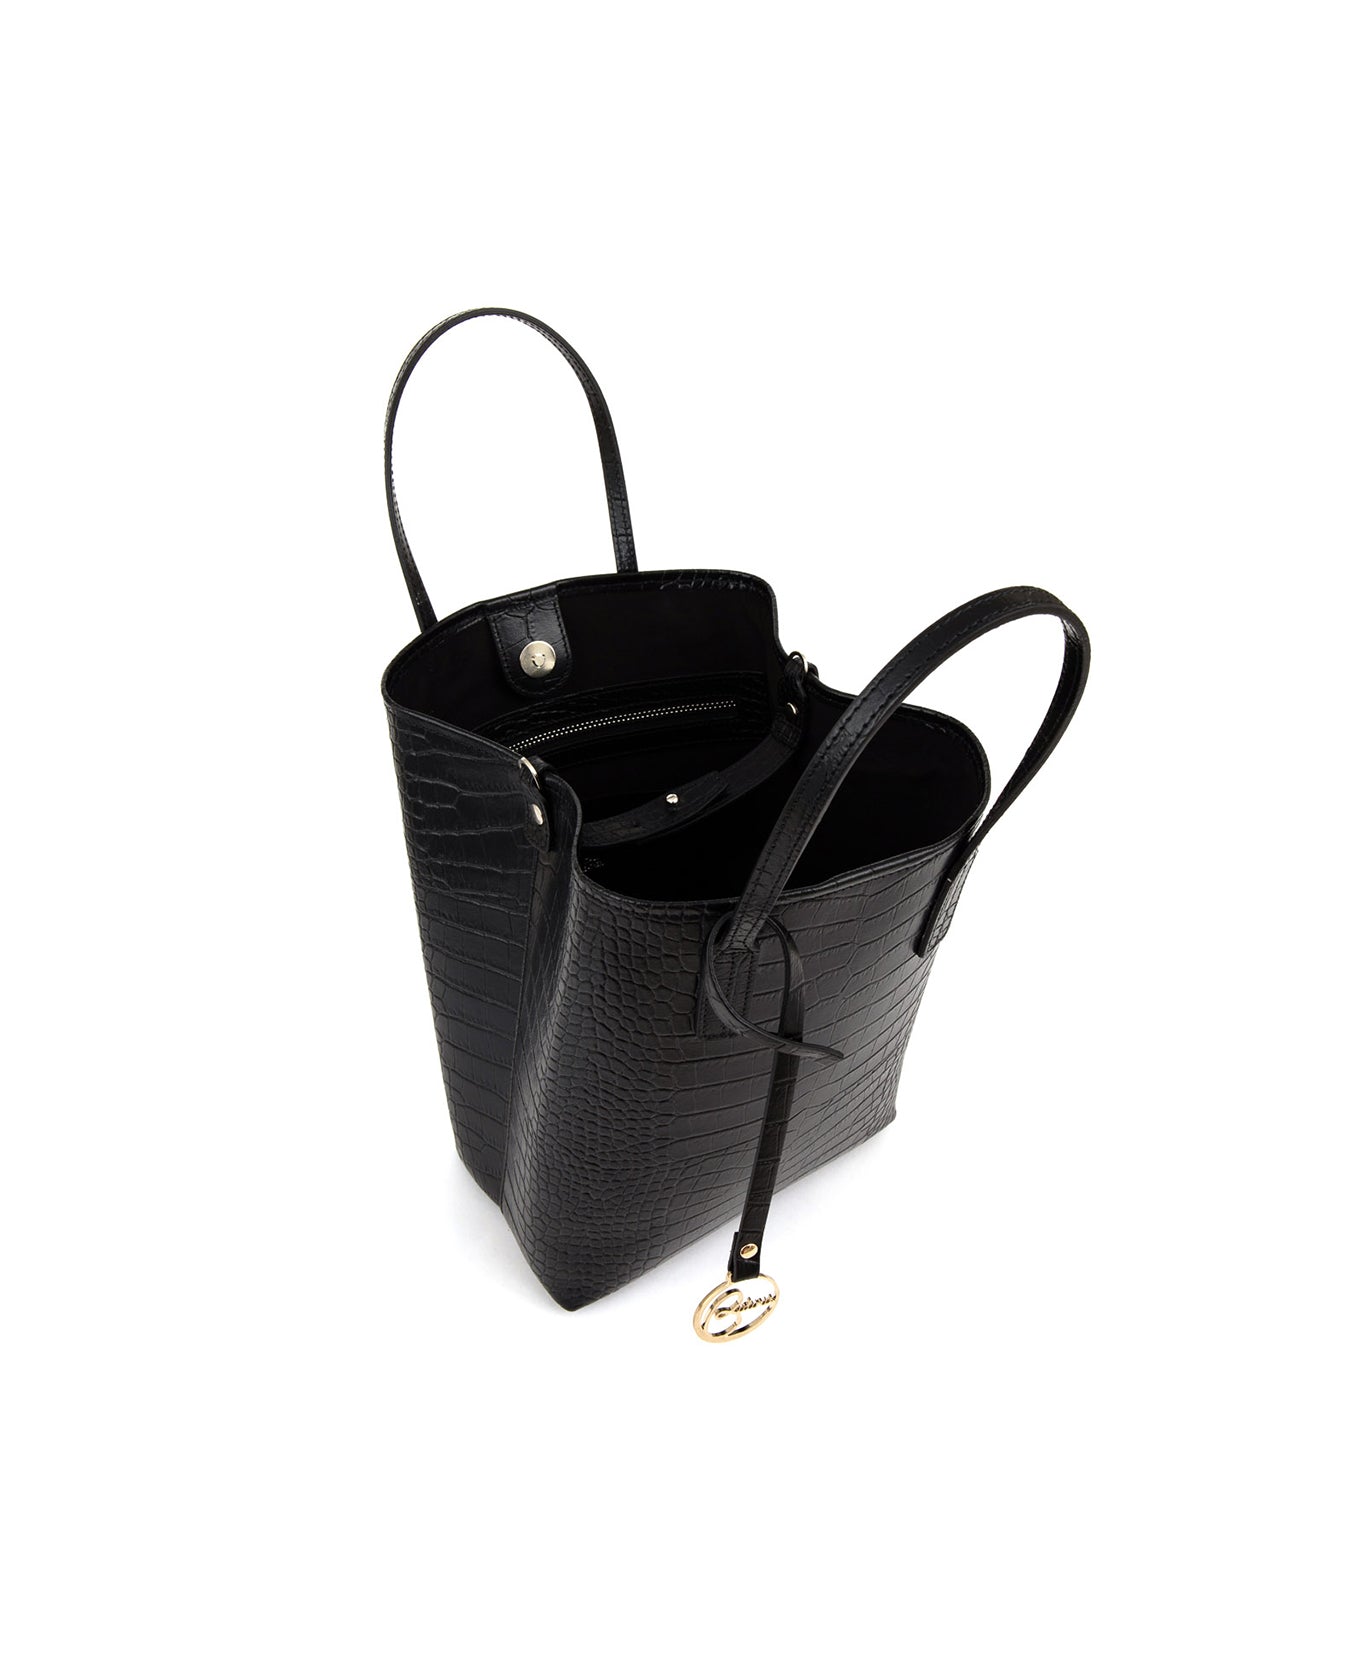 belt design leather bag, black crocodile leather bag, practical and stylish bag, versatile bag for any occasion, ideal bag for daytime strolls